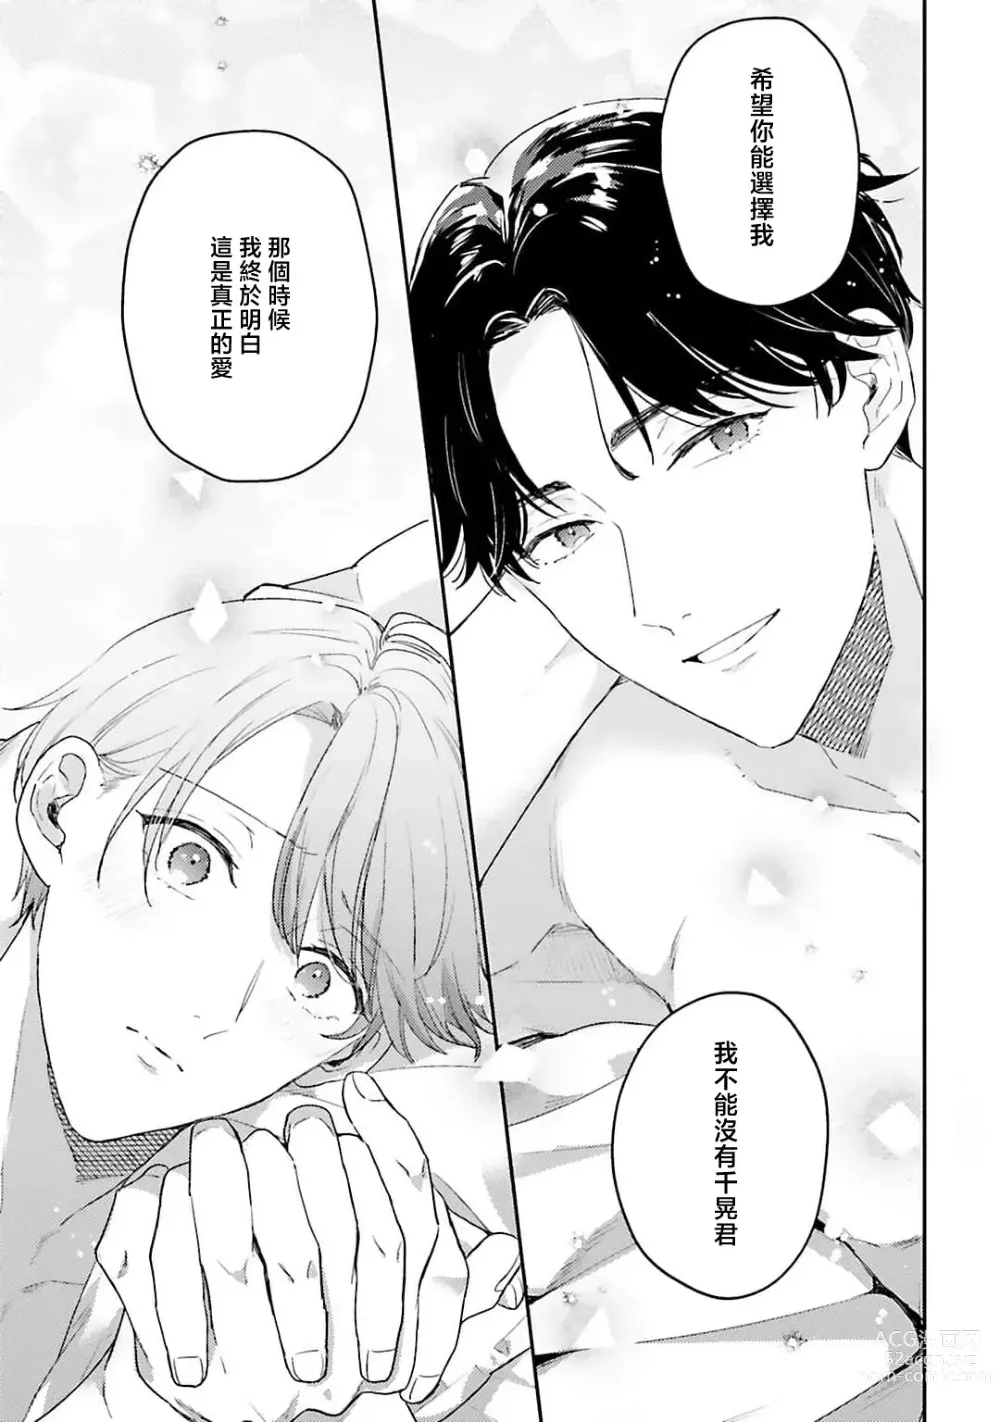 Page 165 of manga 绽放的恋爱皆为醉与甜1-5